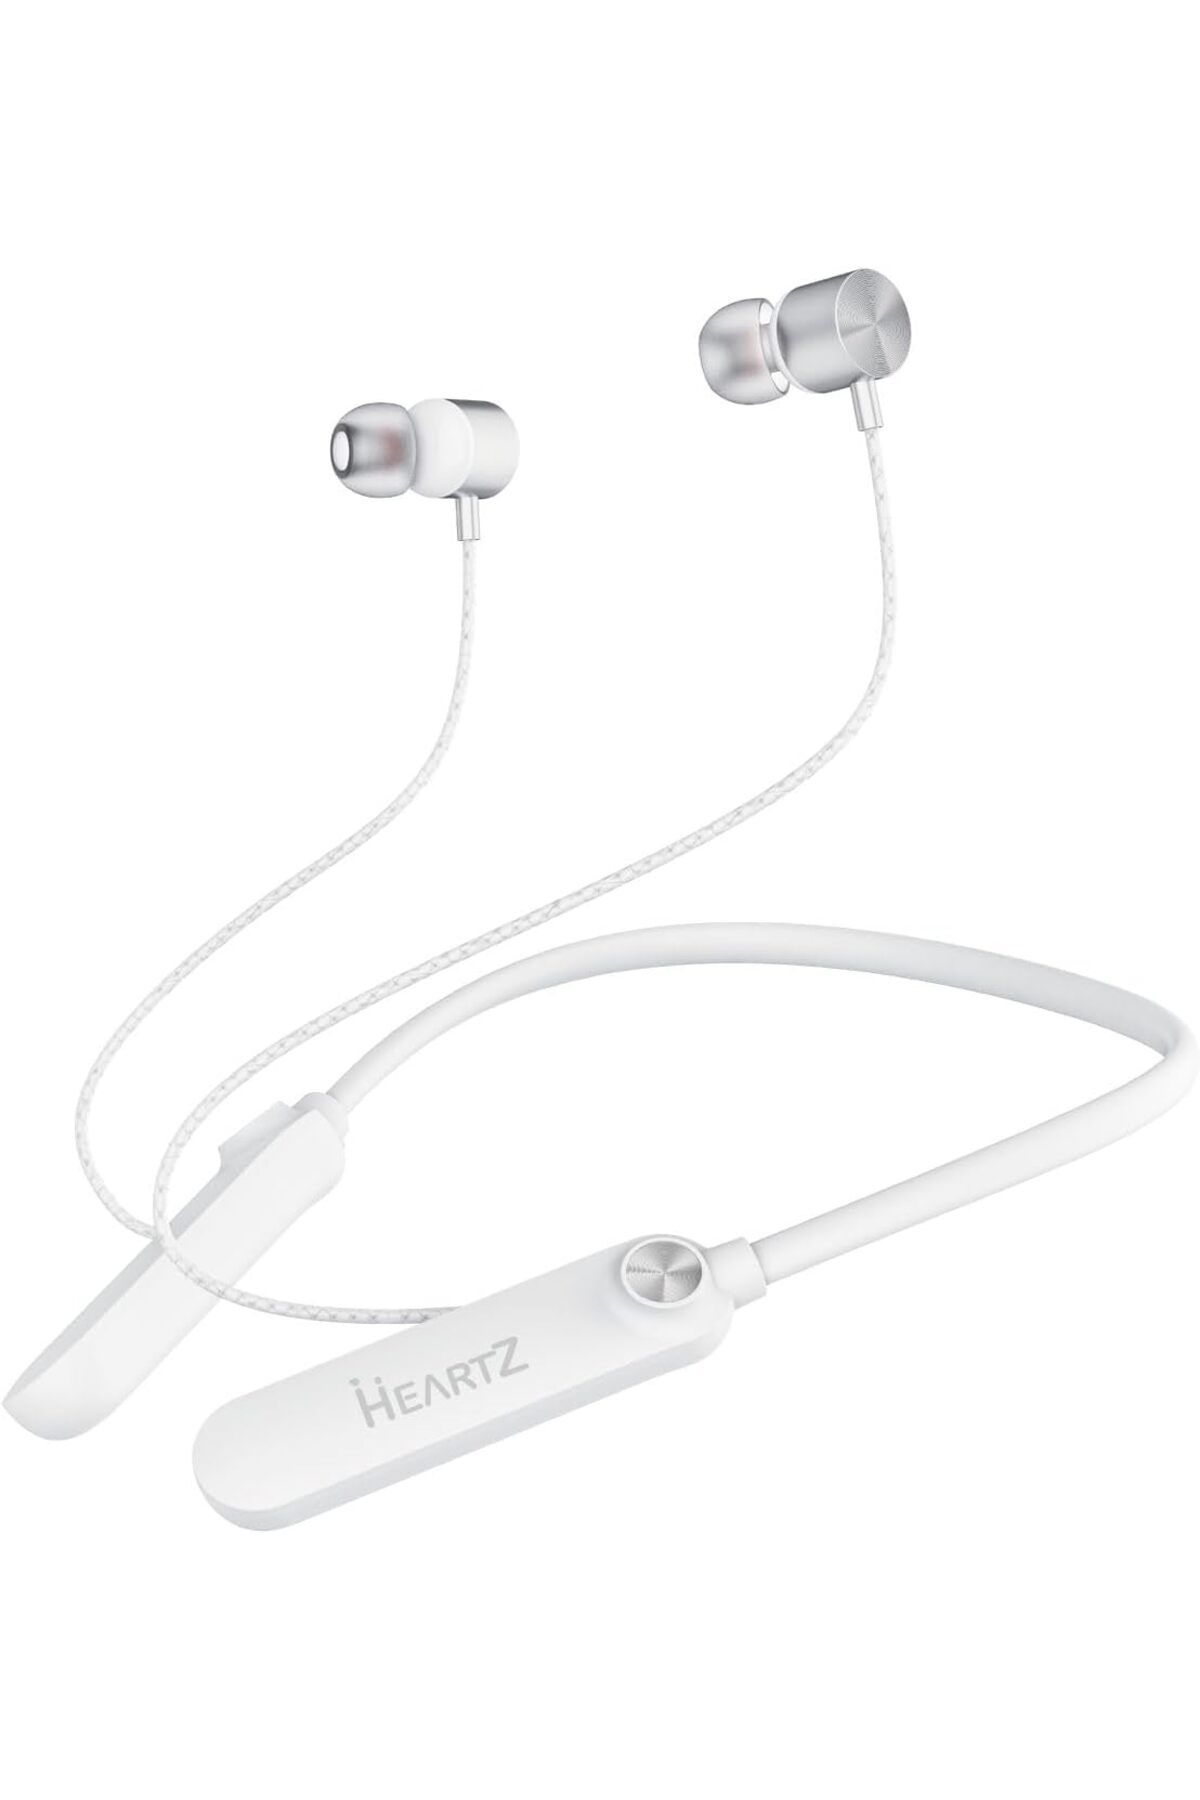 Deppo Trend 150 Saat Uzun Kullanım Süresi Sporcu Bluetooth Kulaklık Boyun Bantlı Ense Tipi Mıknatıslı Kablosuz